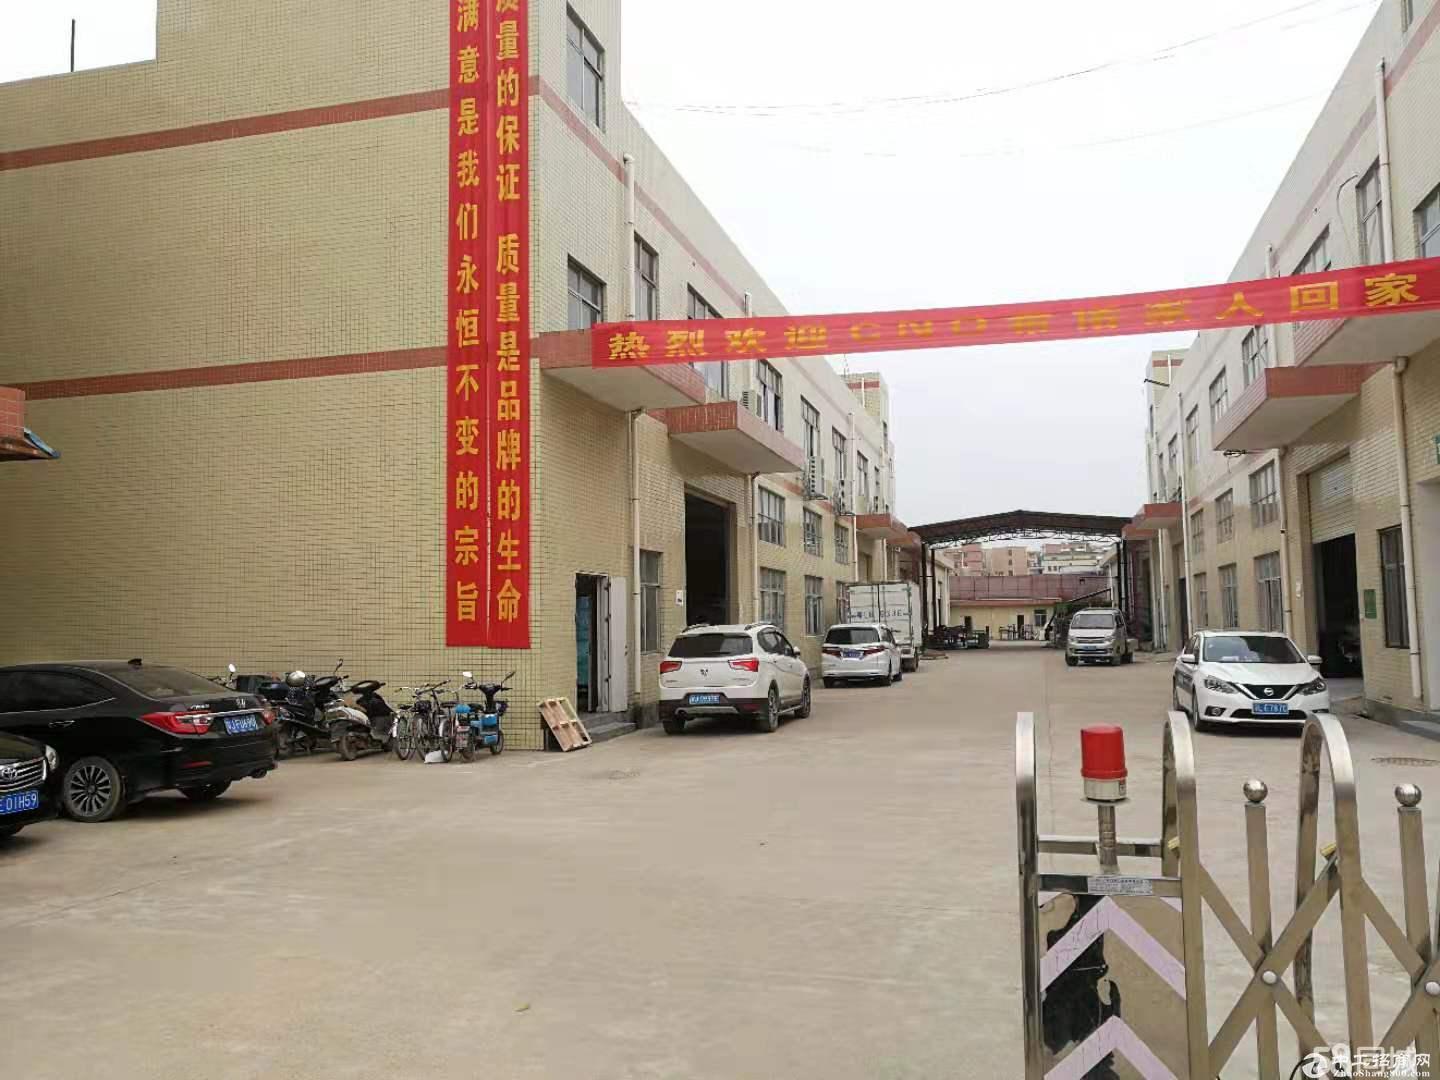 惠州秋长镇独院厂房16600平方,行业不限电400